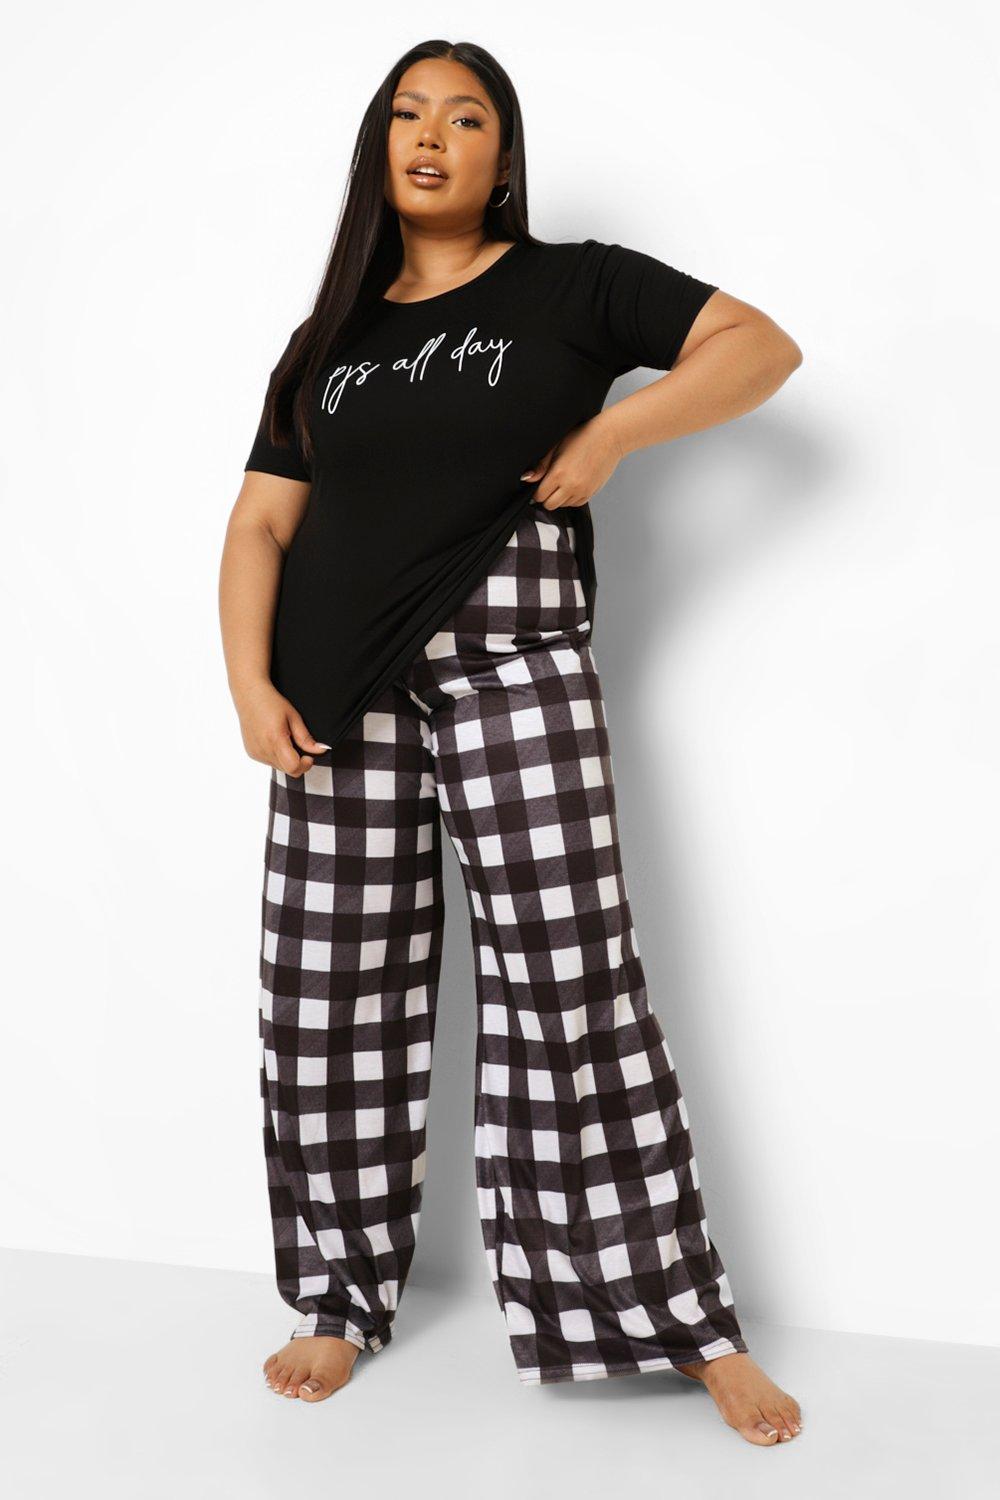 Plaid & Slogan Graphic Pajama Set  Pajamas women, Pajama set, Home wear  women pajamas